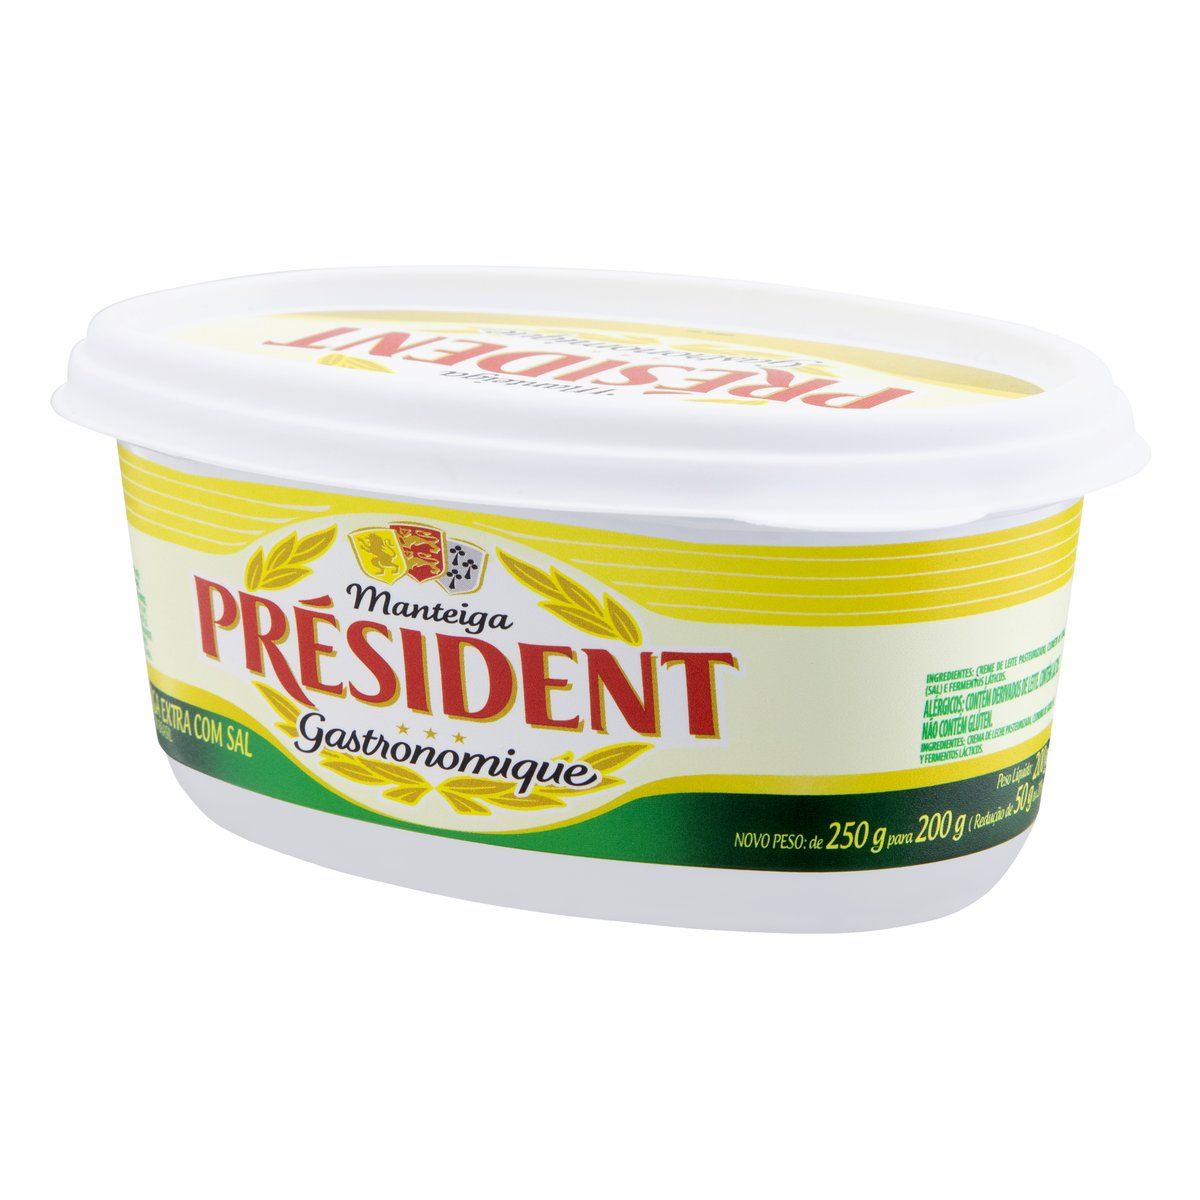 Manteiga Extra com Sal Président Gastronomique Pote 200g image number 1